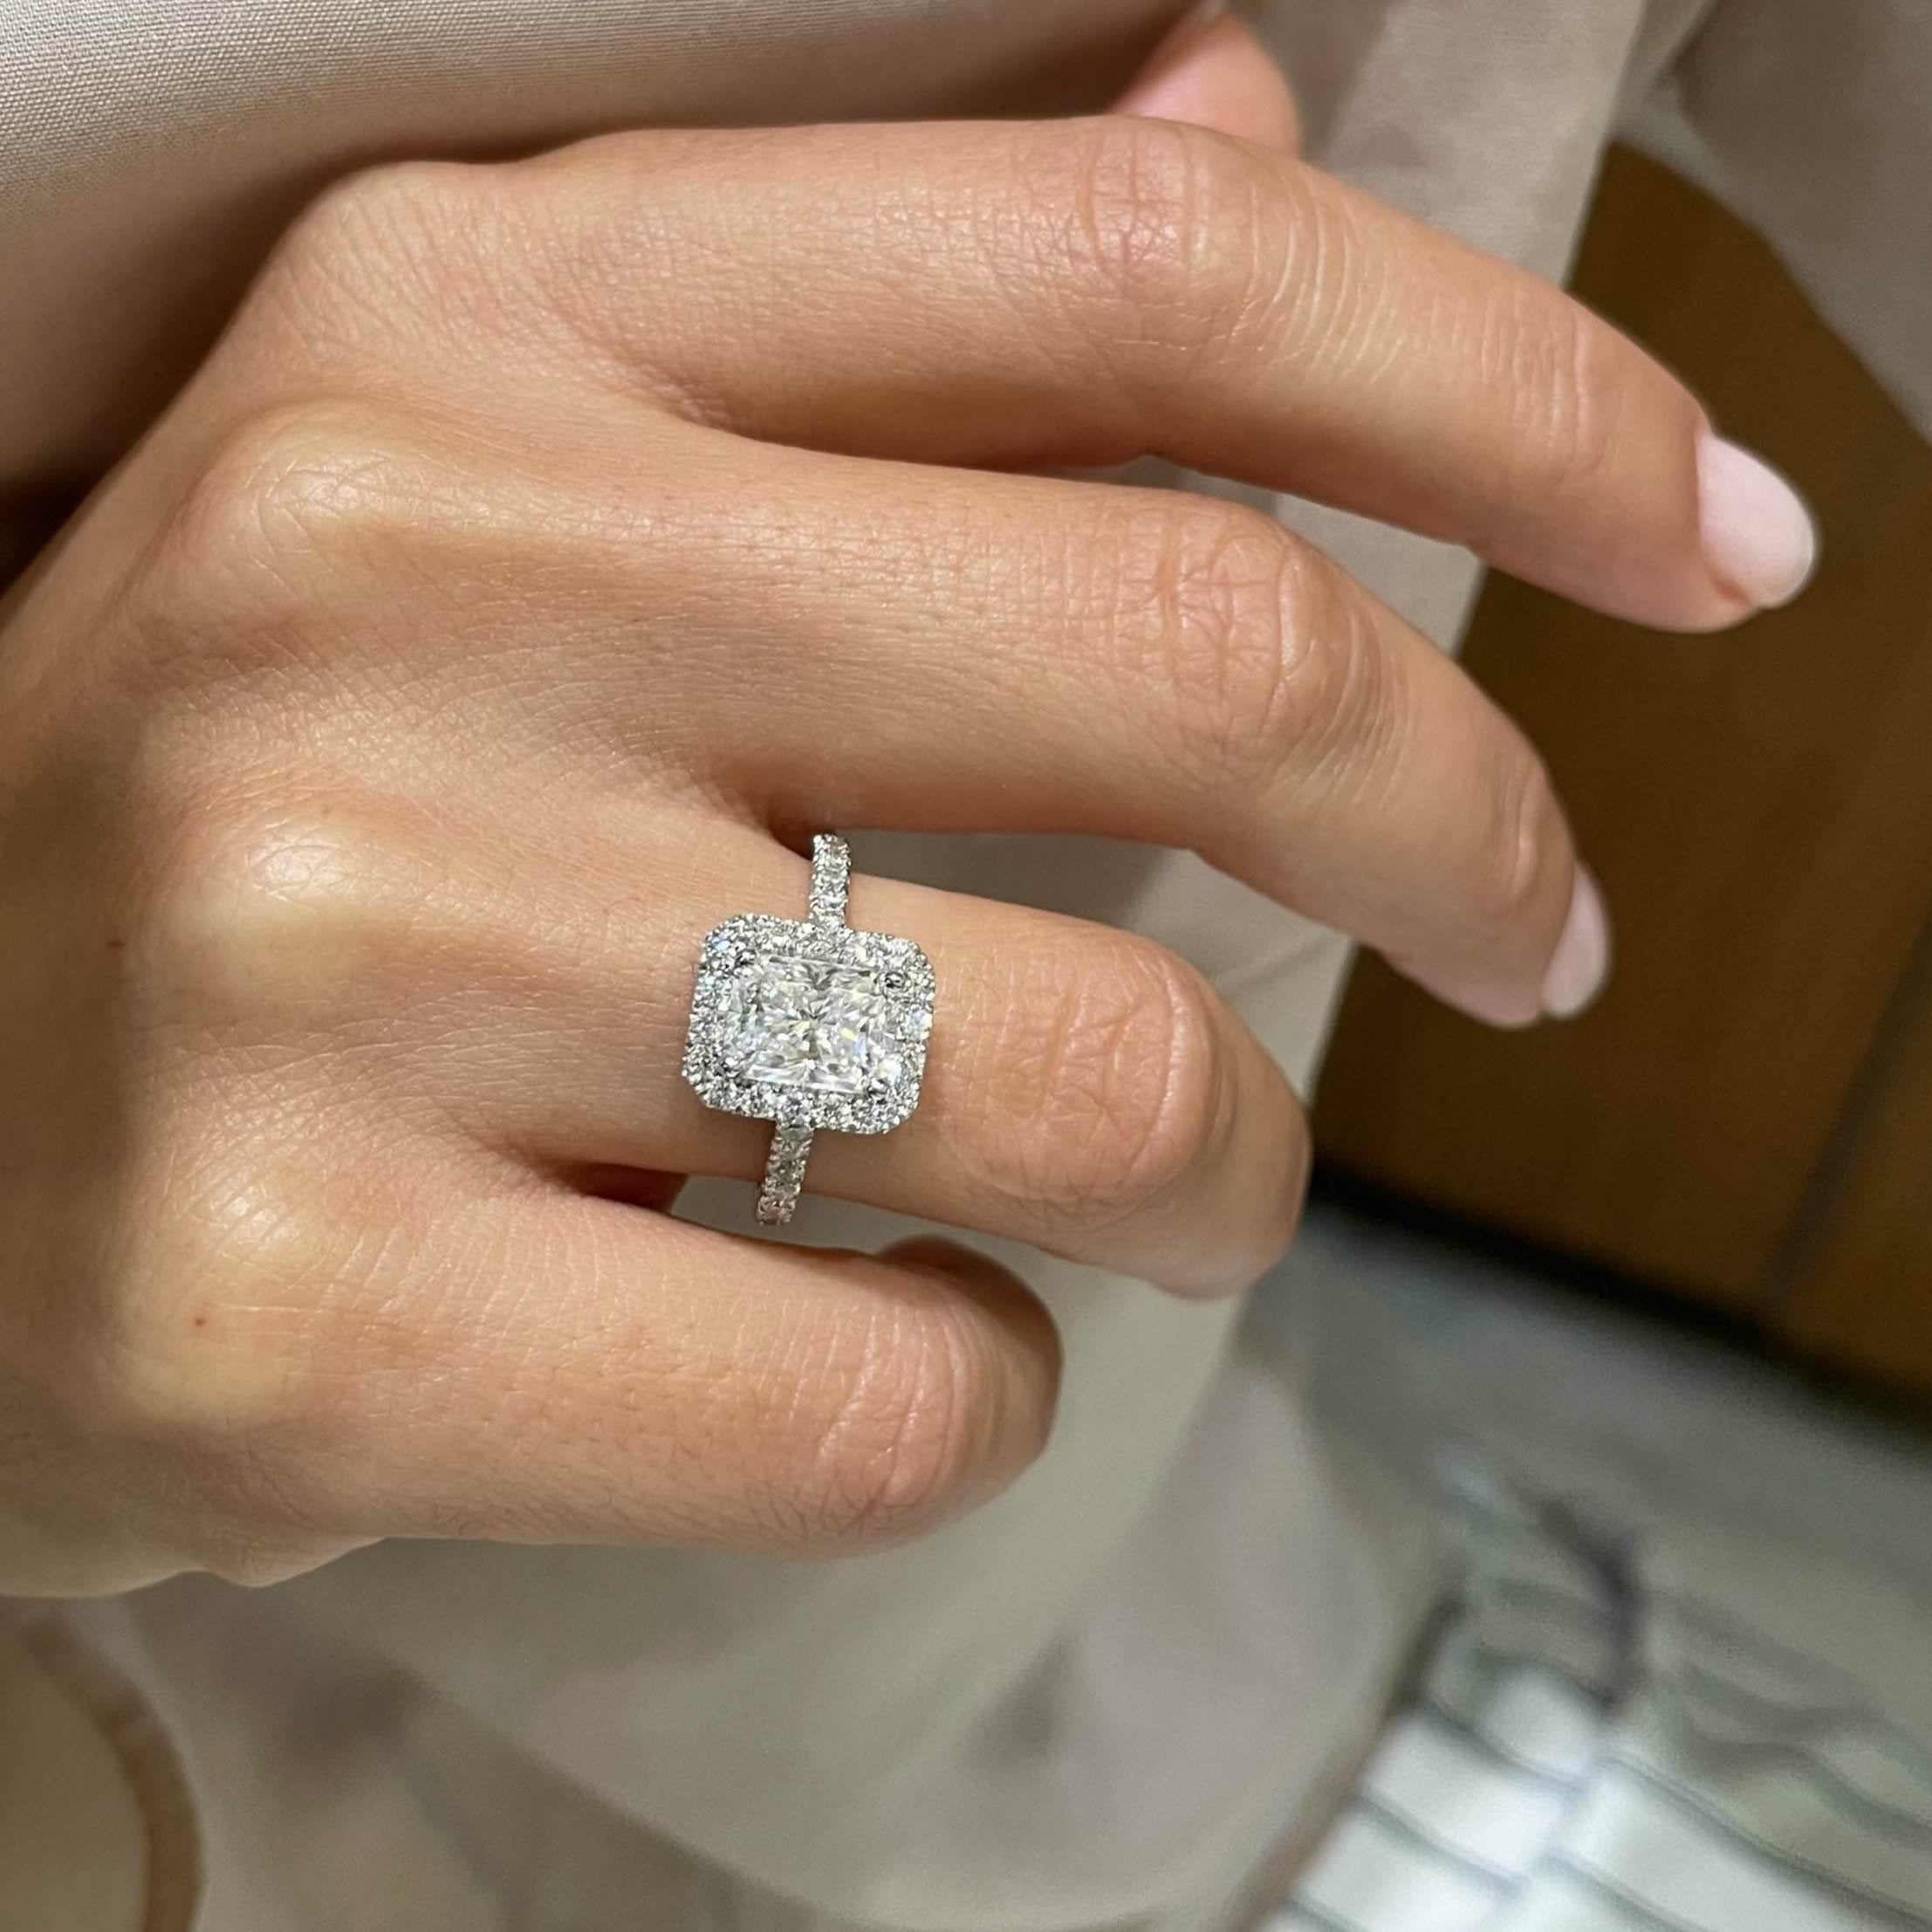 Andrea Moissanite & Diamonds Ring   (2.3 Carat) -14K White Gold